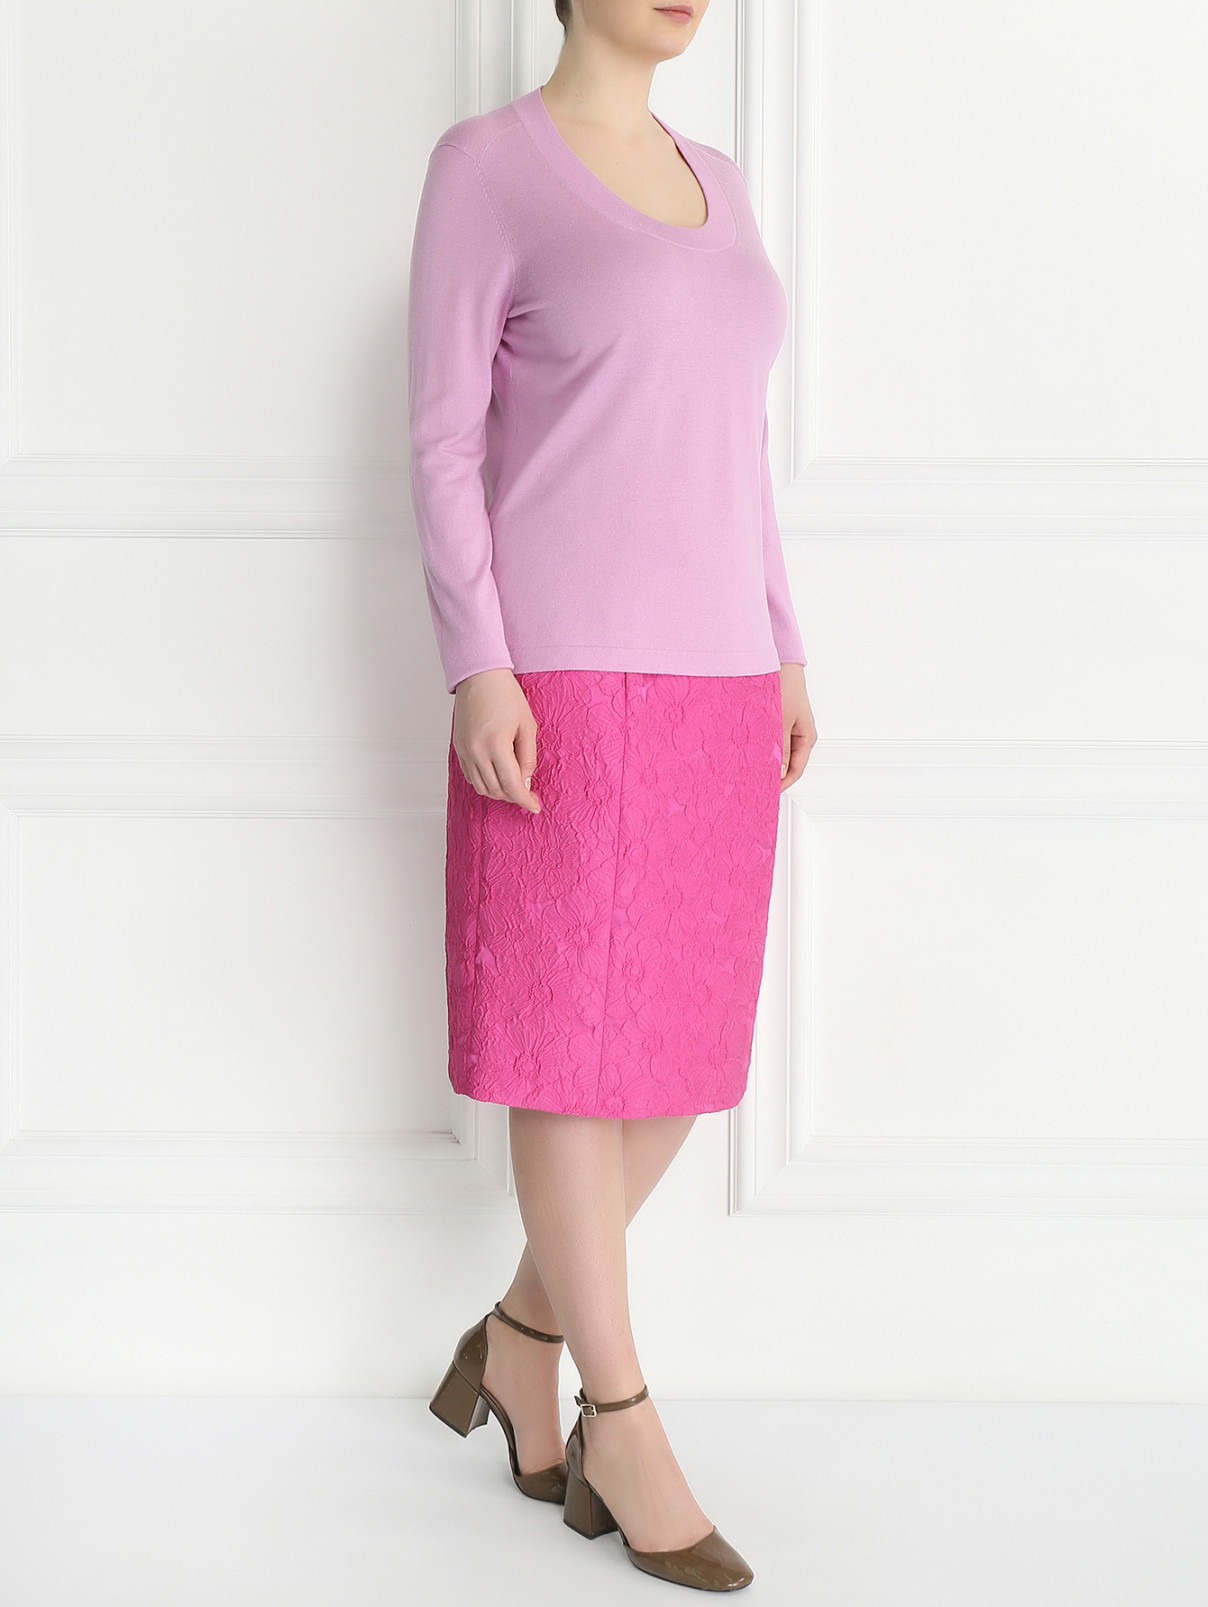 Джемпер из шерсти и шелка Marina Rinaldi  –  Модель Общий вид  – Цвет:  Розовый